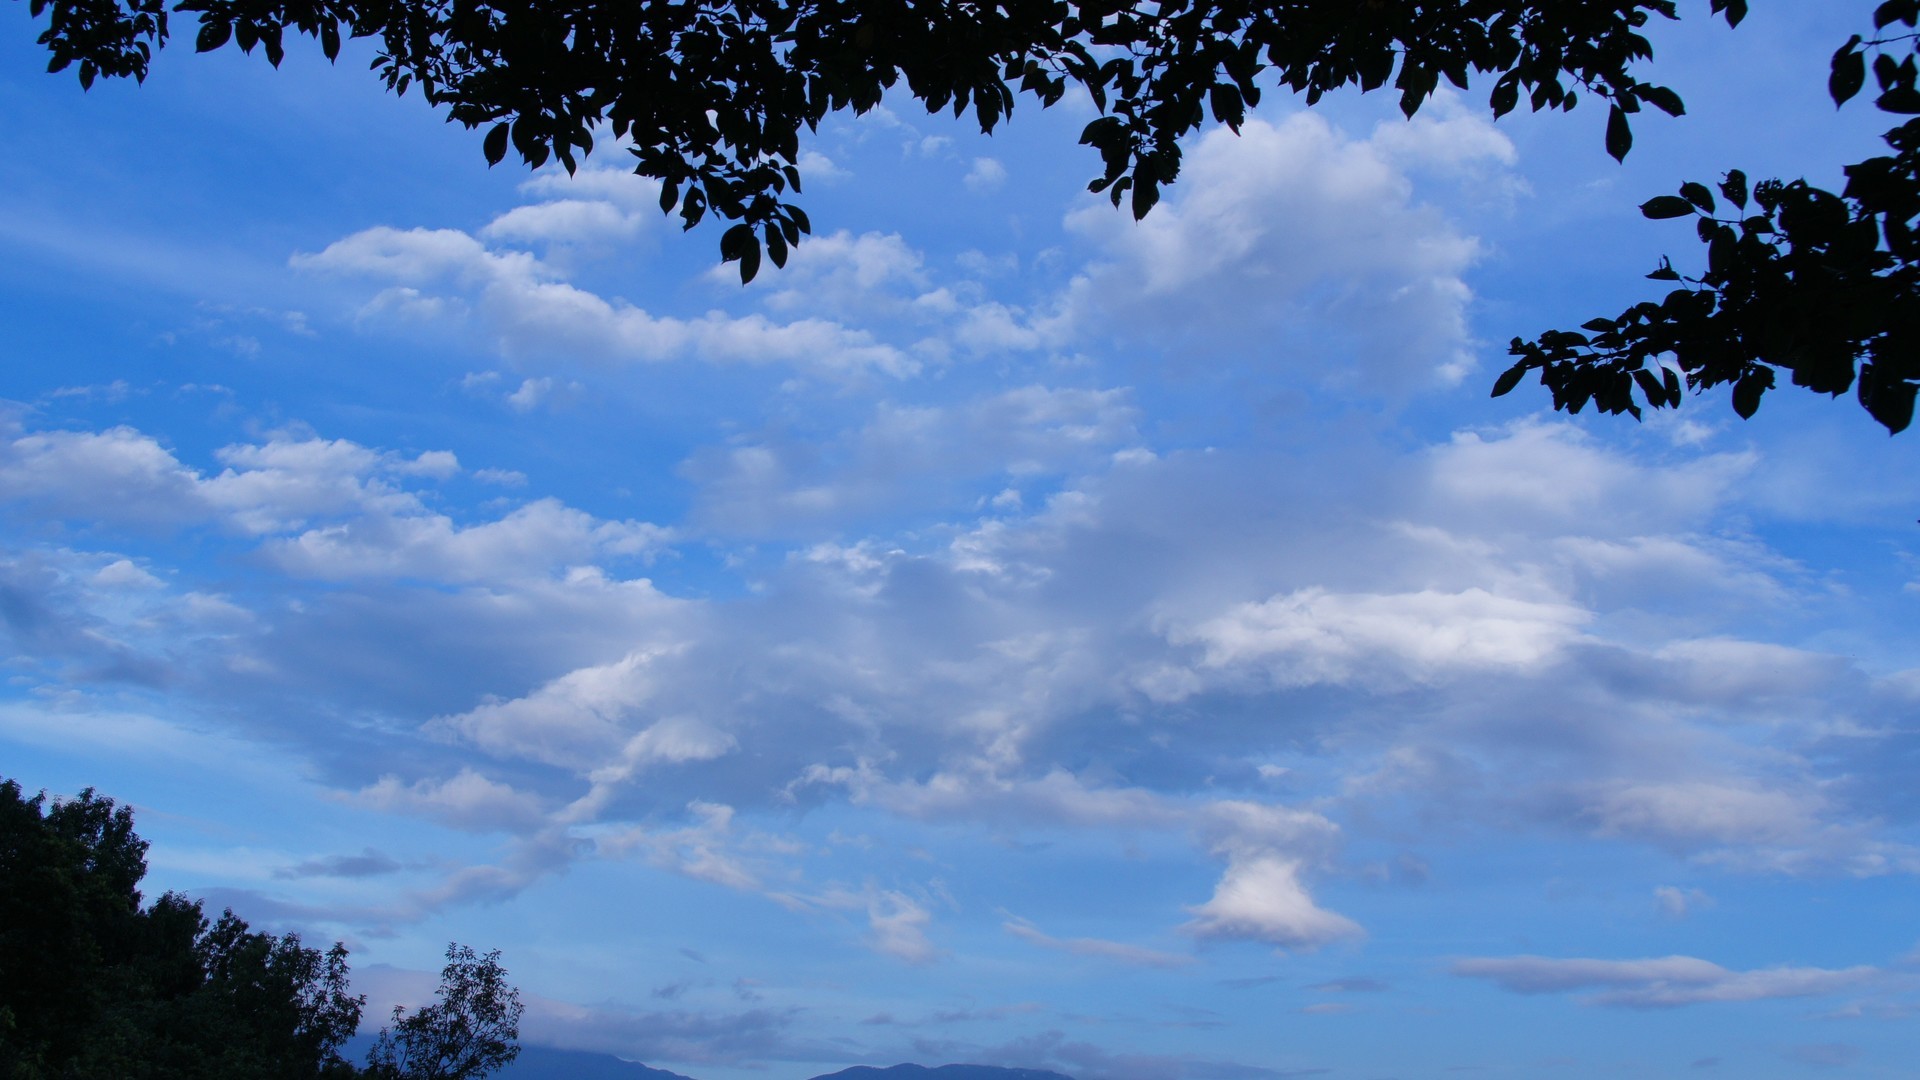 美丽的蓝天白云如鱼鳞一样唯美风景图片壁纸